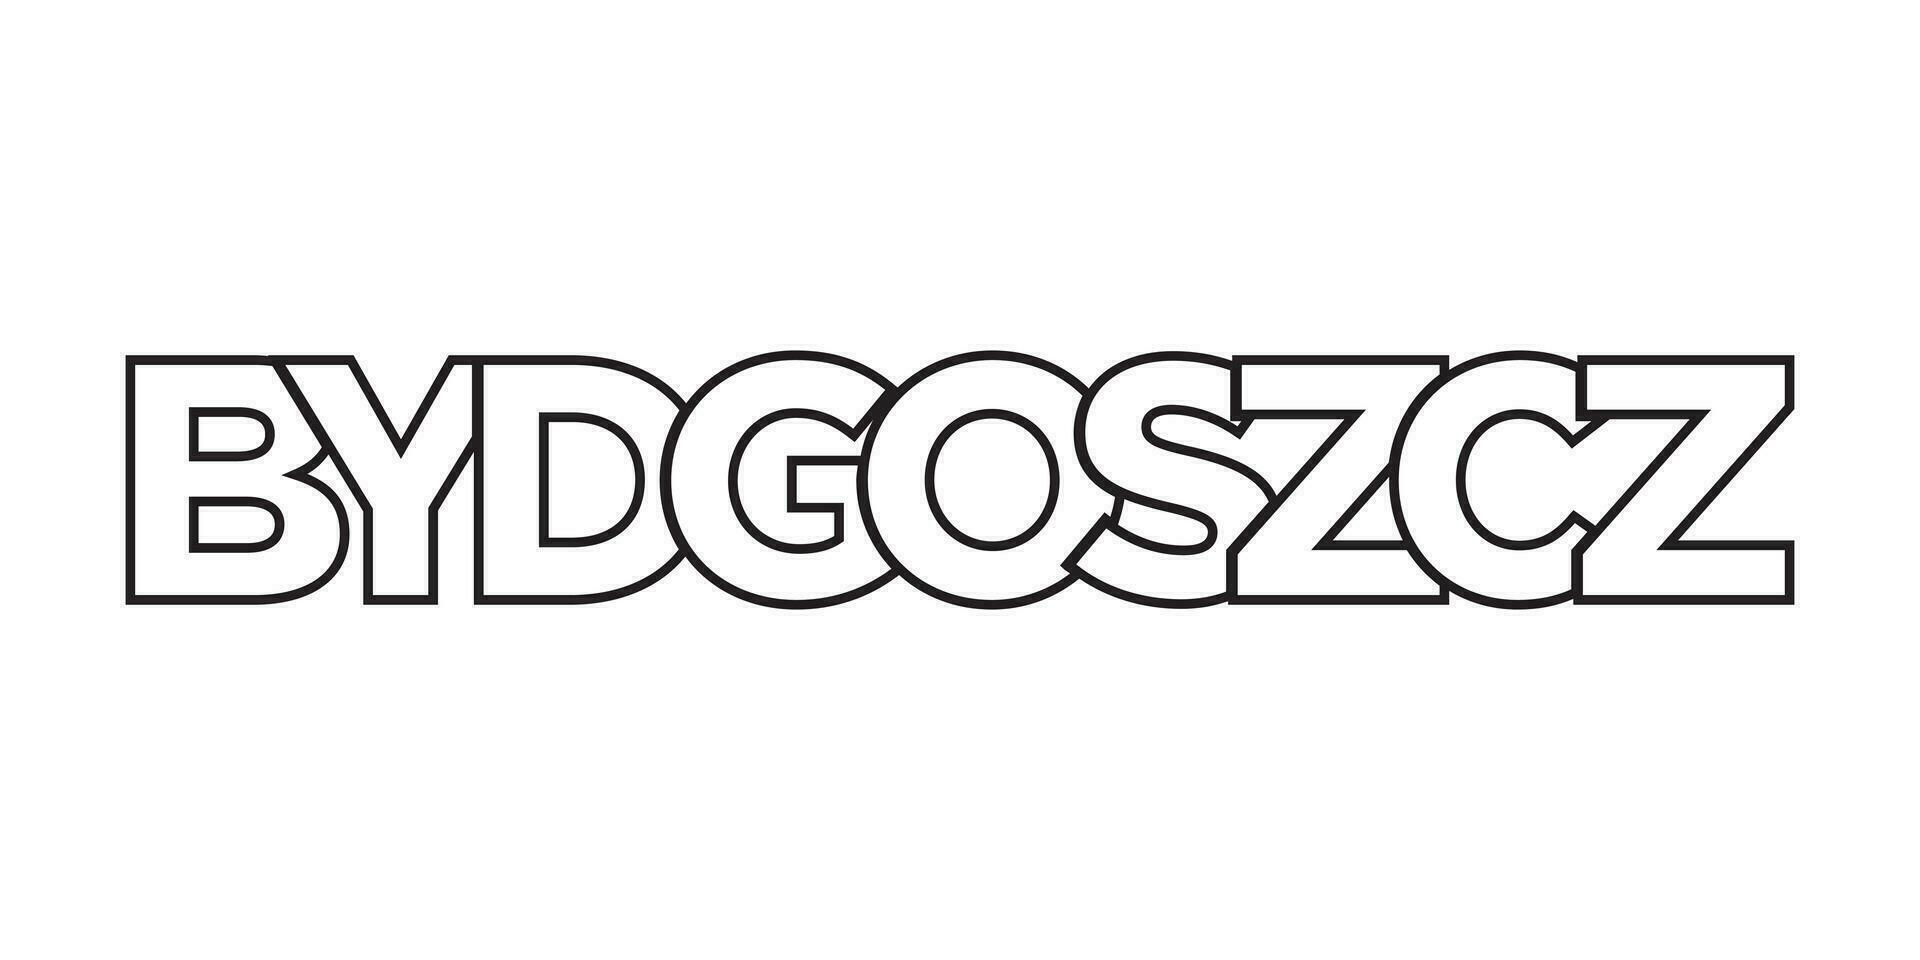 bydgoszcz dans le Pologne emblème. le conception Caractéristiques une géométrique style, vecteur illustration avec audacieux typographie dans une moderne Police de caractère. le graphique slogan caractères.